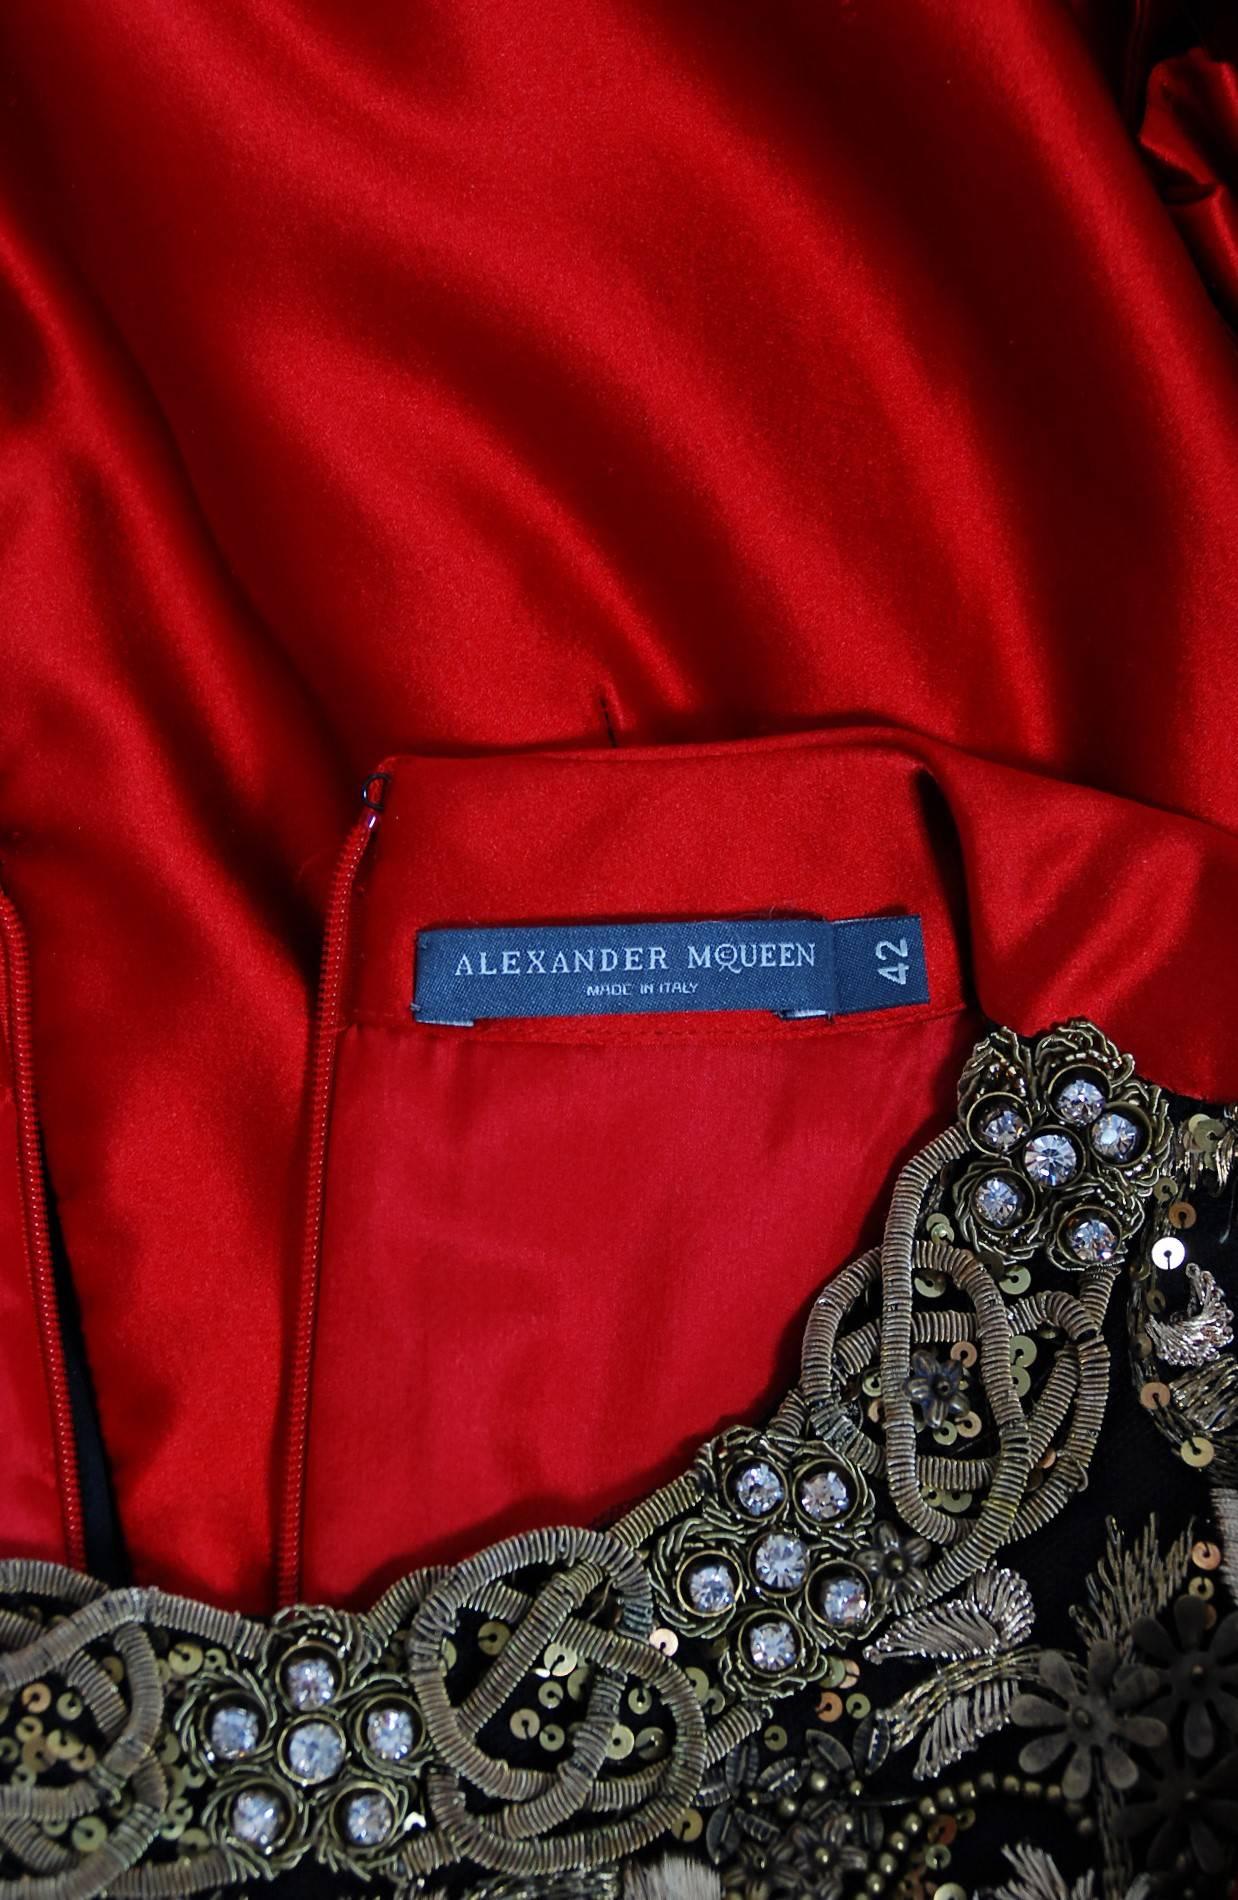 2010 Alexander McQueen Final Runway Collection Red Satin Metallic Bullion Dress 4